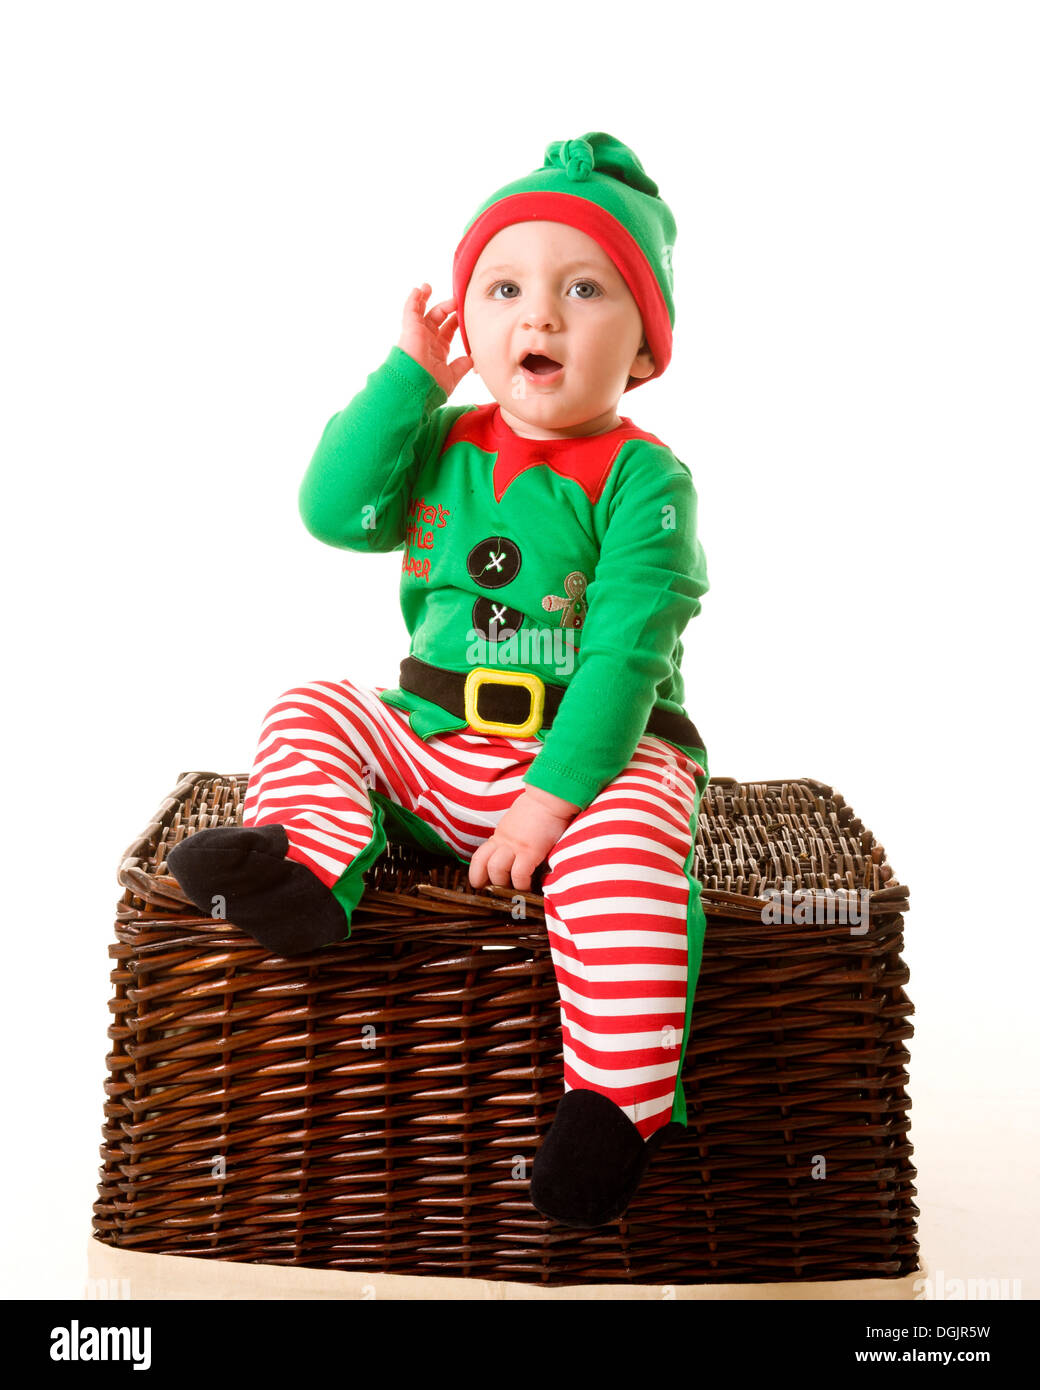 Costume da elfo immagini e fotografie stock ad alta risoluzione - Alamy